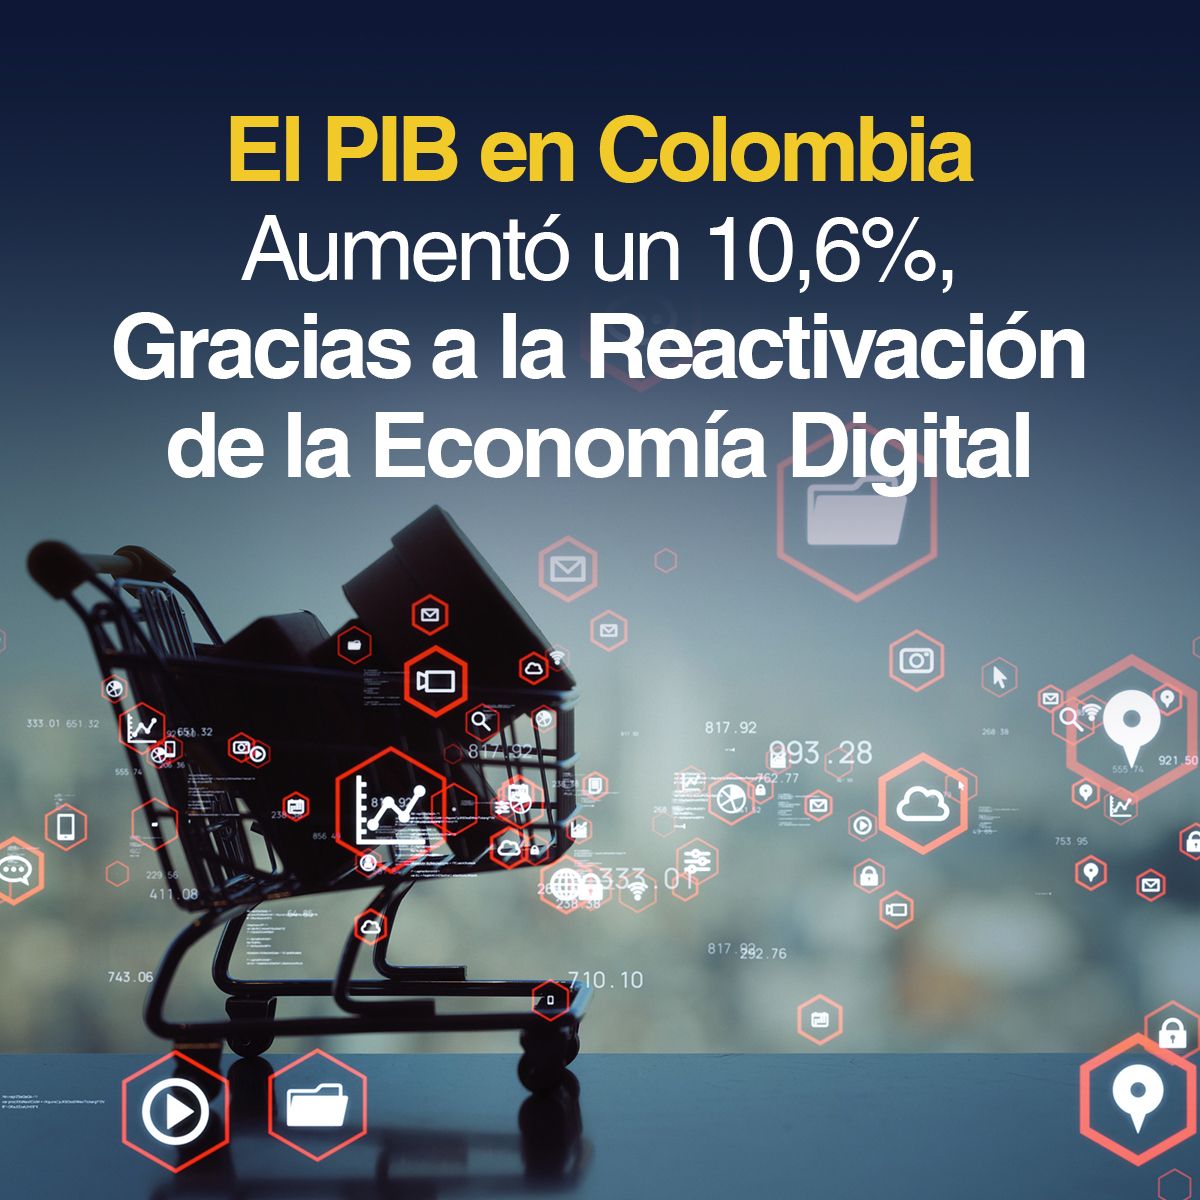 El PIB en Colombia Aumentó un 10,6% Gracias, a la Reactivación de la Economía Digital